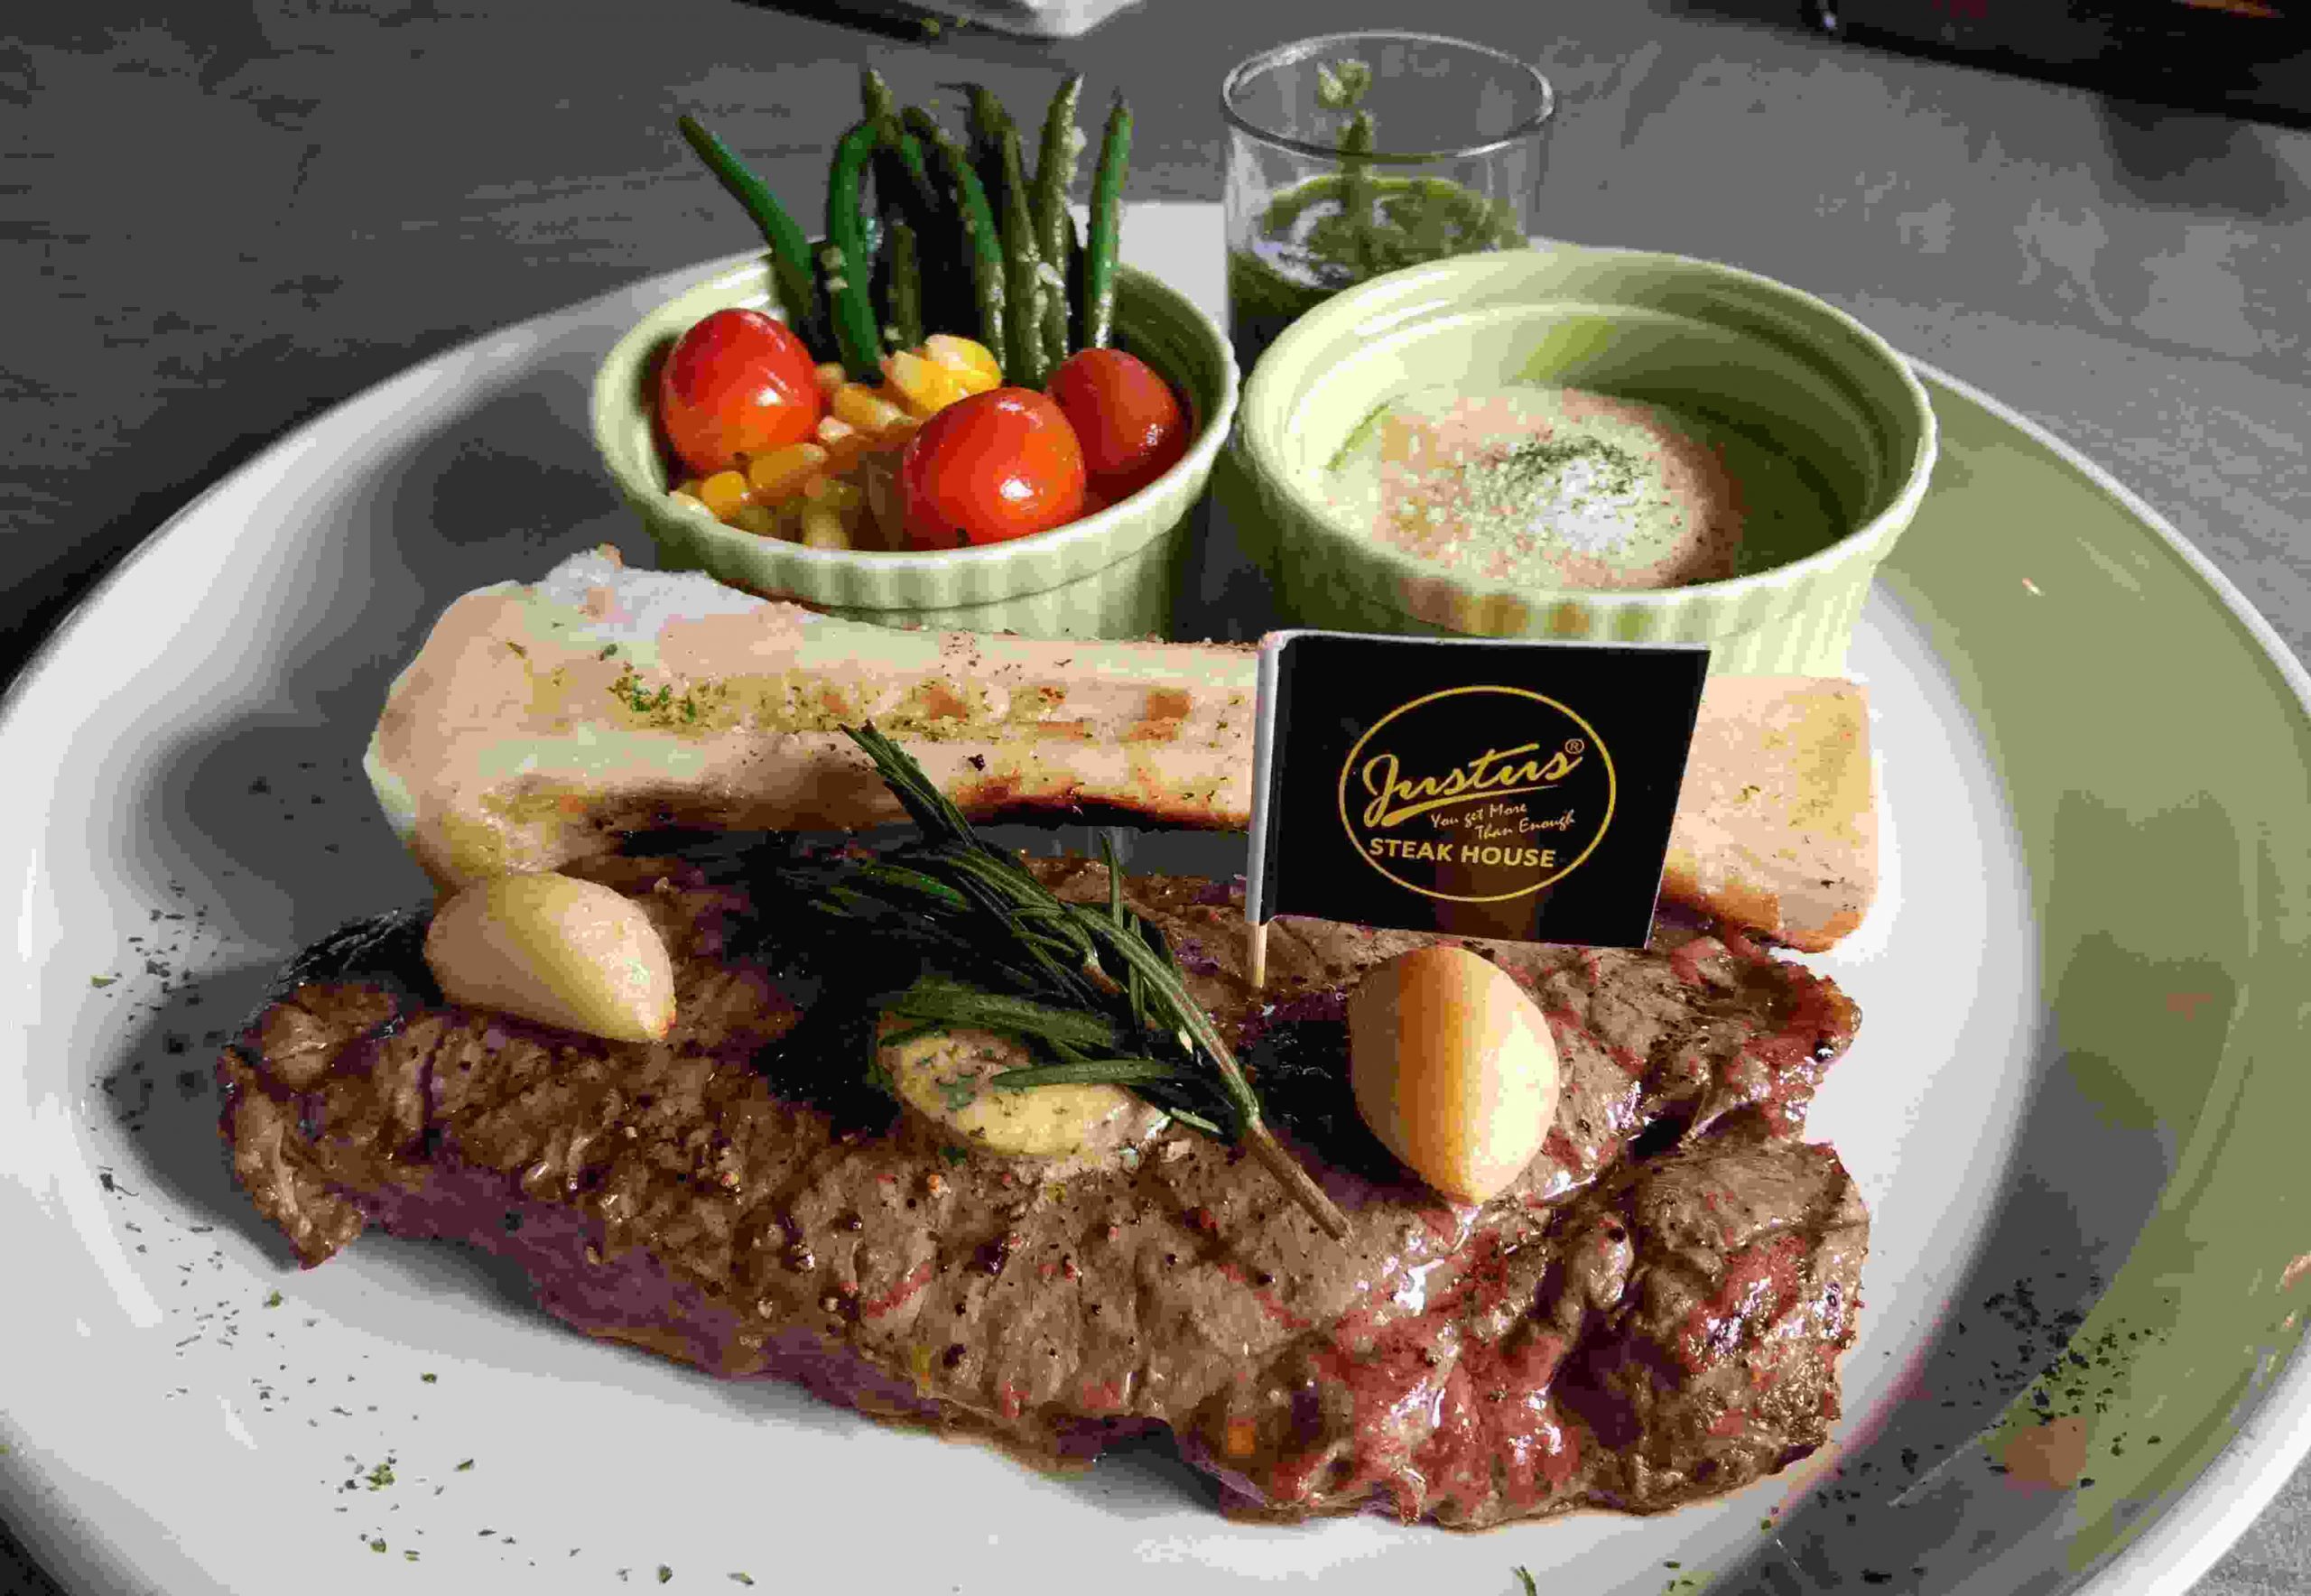 Hadir di Jakarta, Justus Steakhouse Tawarkan Daging Steak Premium